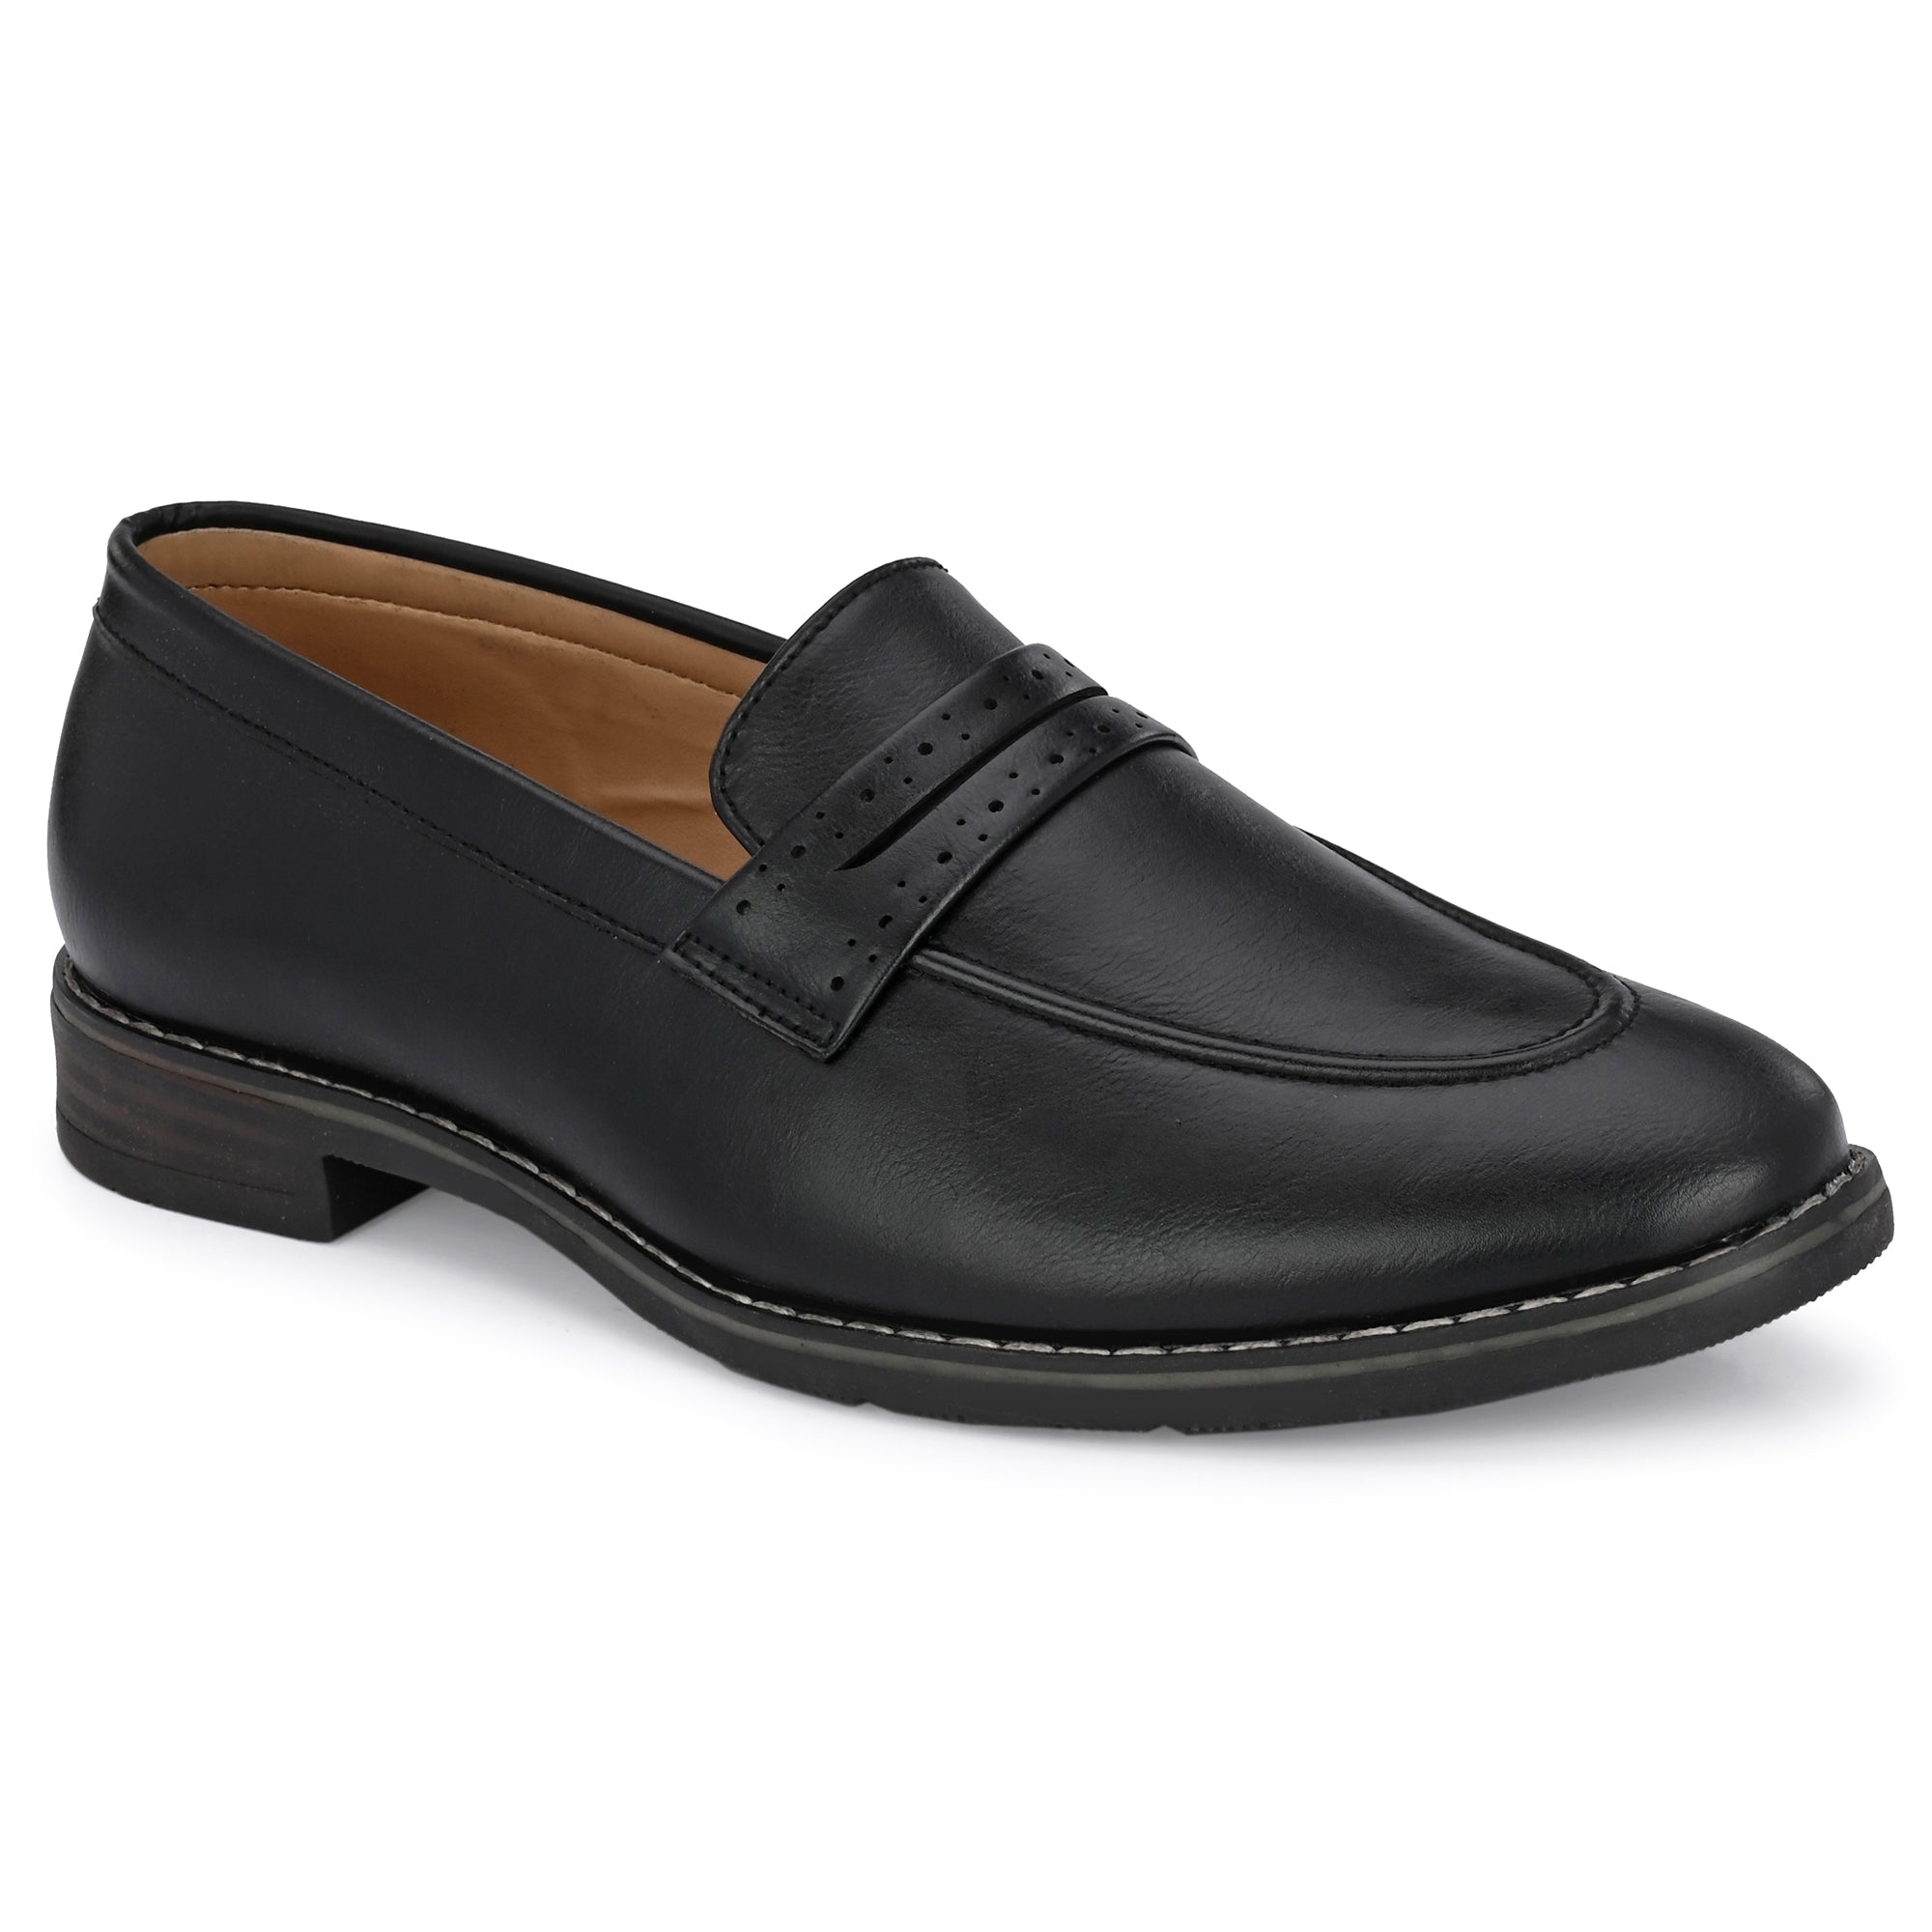 black-loafers-attitudist-shoes-for-men-sp2a